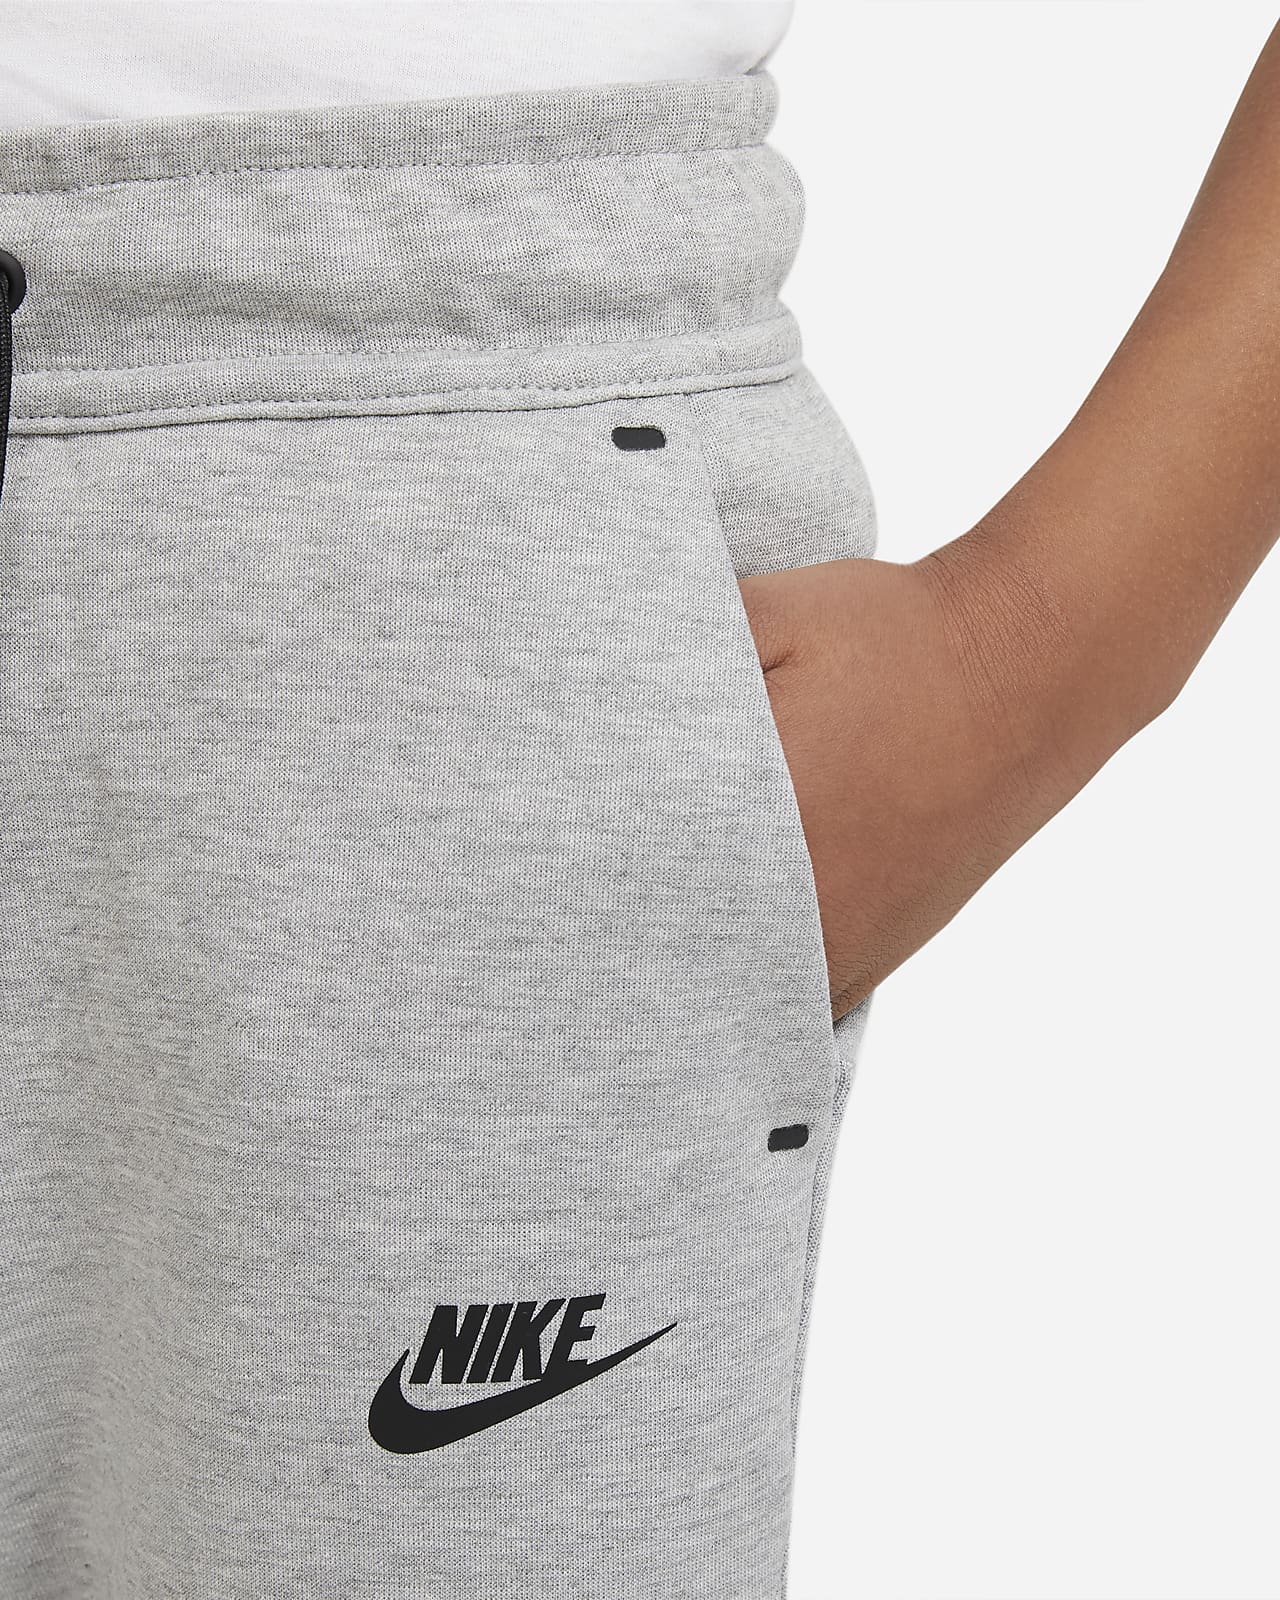  Nike Boy's Sportswear Tech Fleece Pants (Little Kids/Big Kids)  Black/Black SM (7-8 Big Kid) : Clothing, Shoes & Jewelry